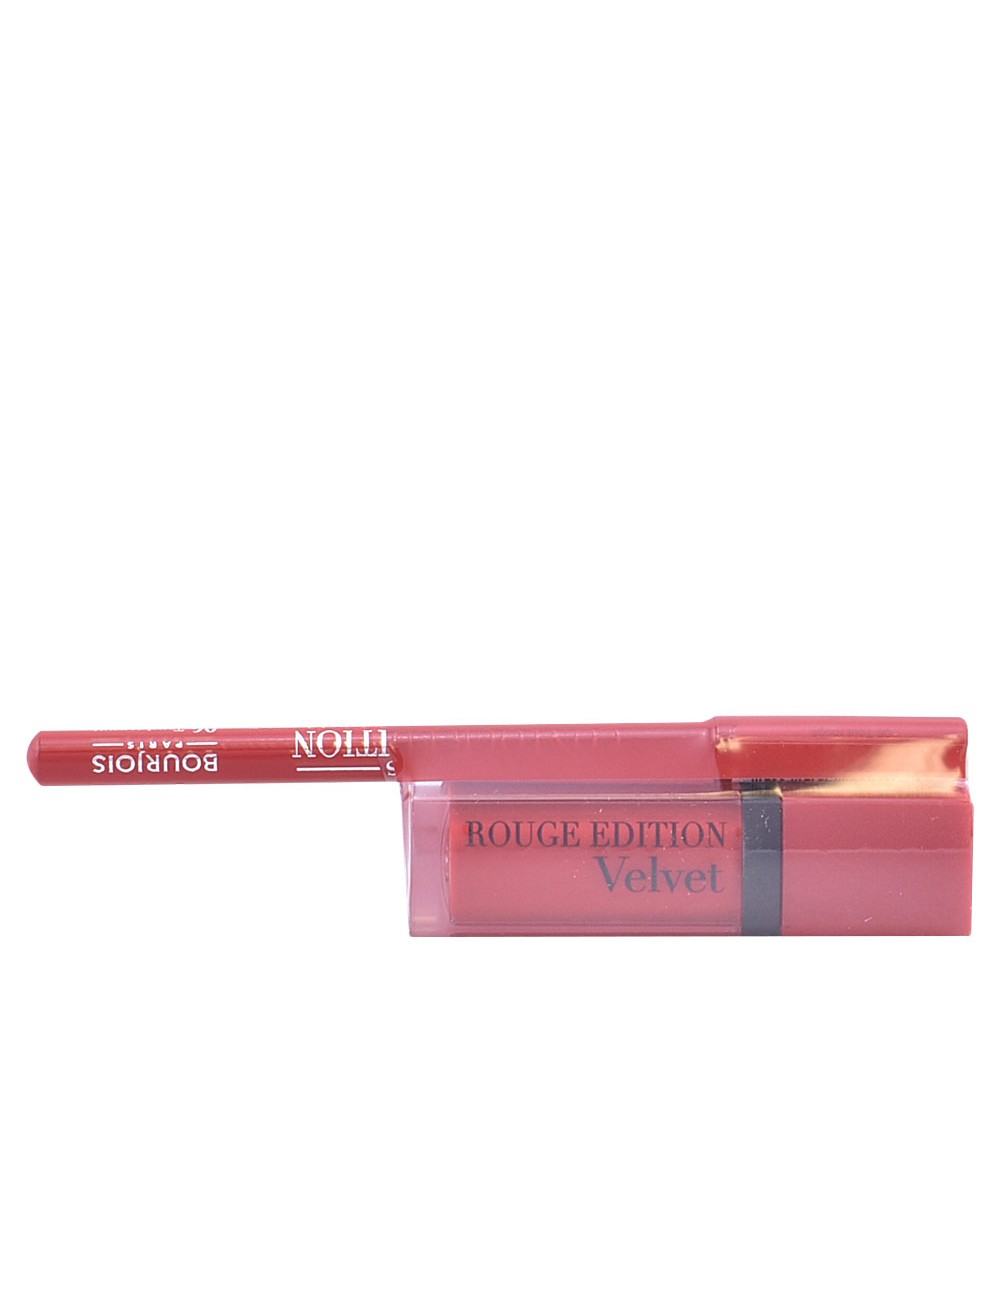 ROUGE EDITION VELVET rouge à lèvres 03+contour lipliner 6 GRATIS NE101130